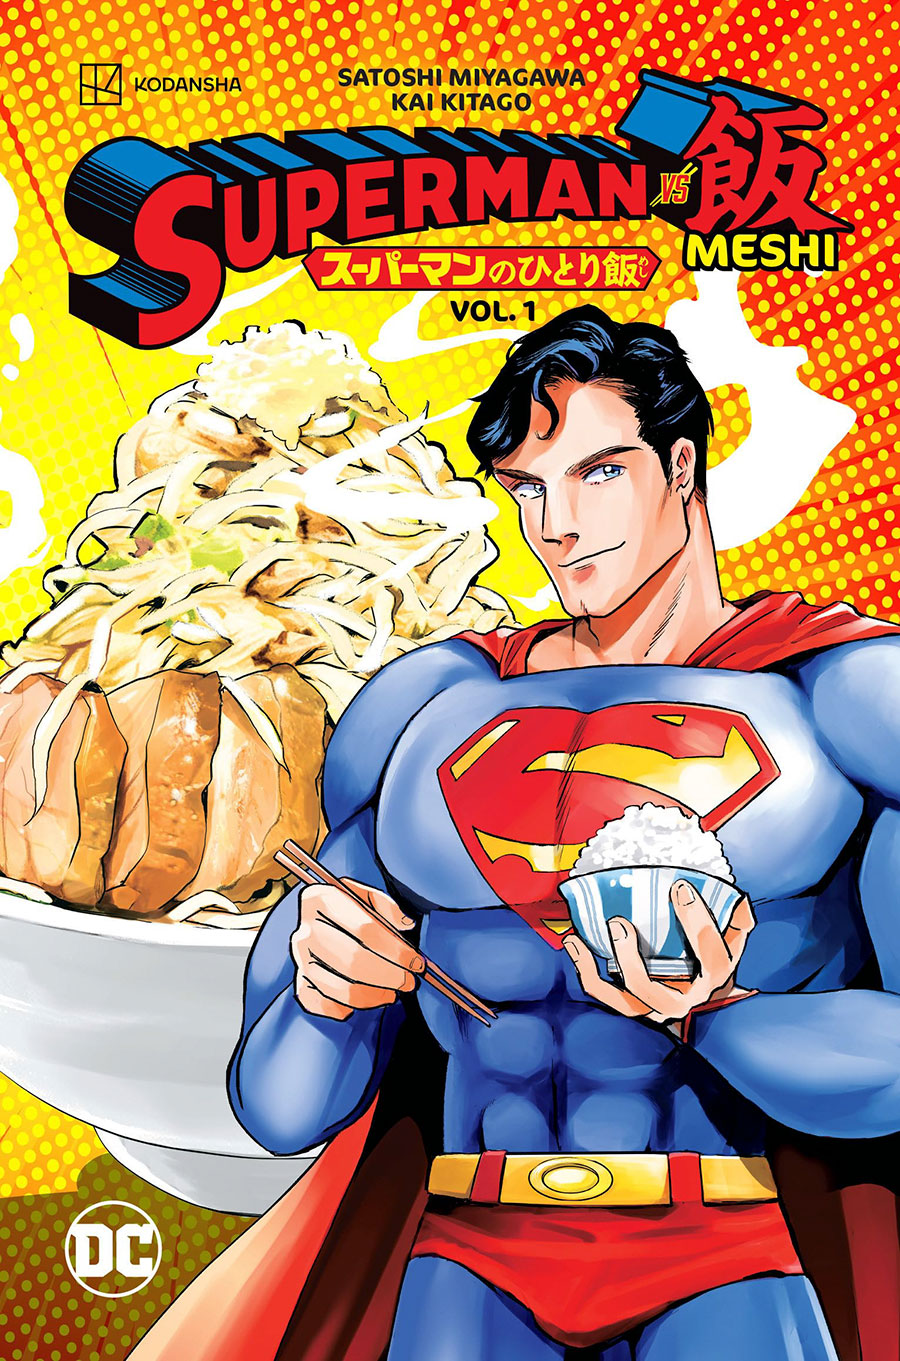 Superman vs Meshi Vol 1 TP